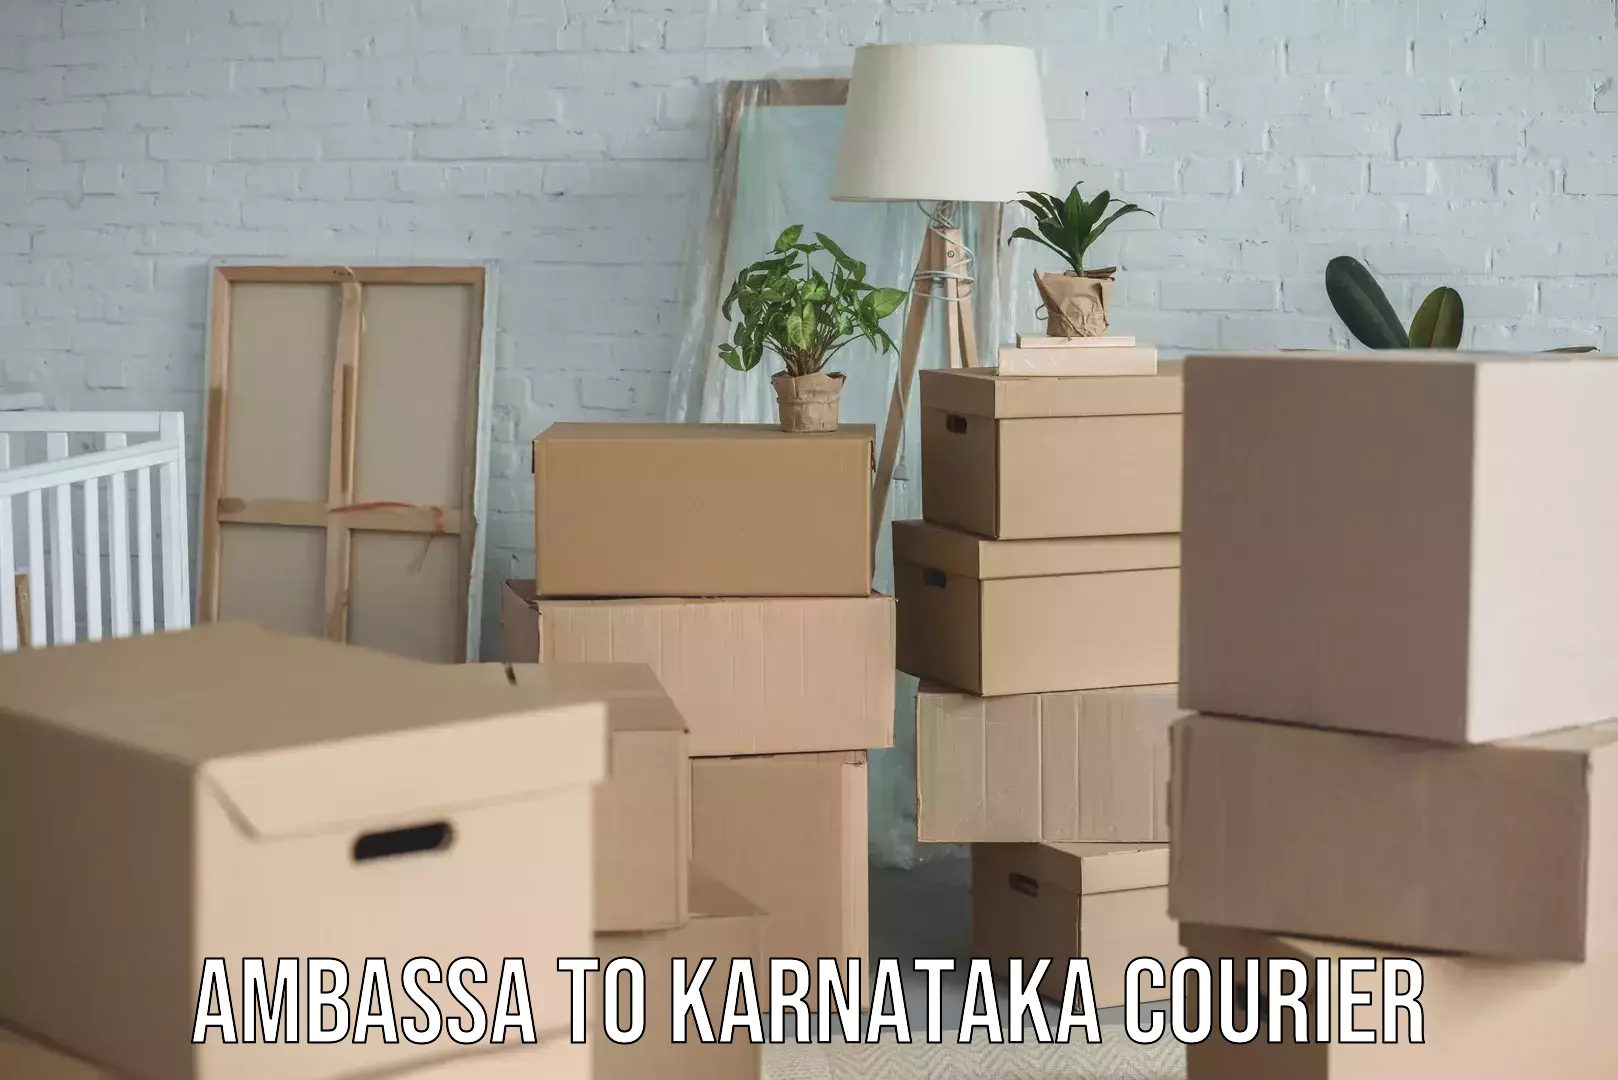 Small business couriers Ambassa to Karnataka